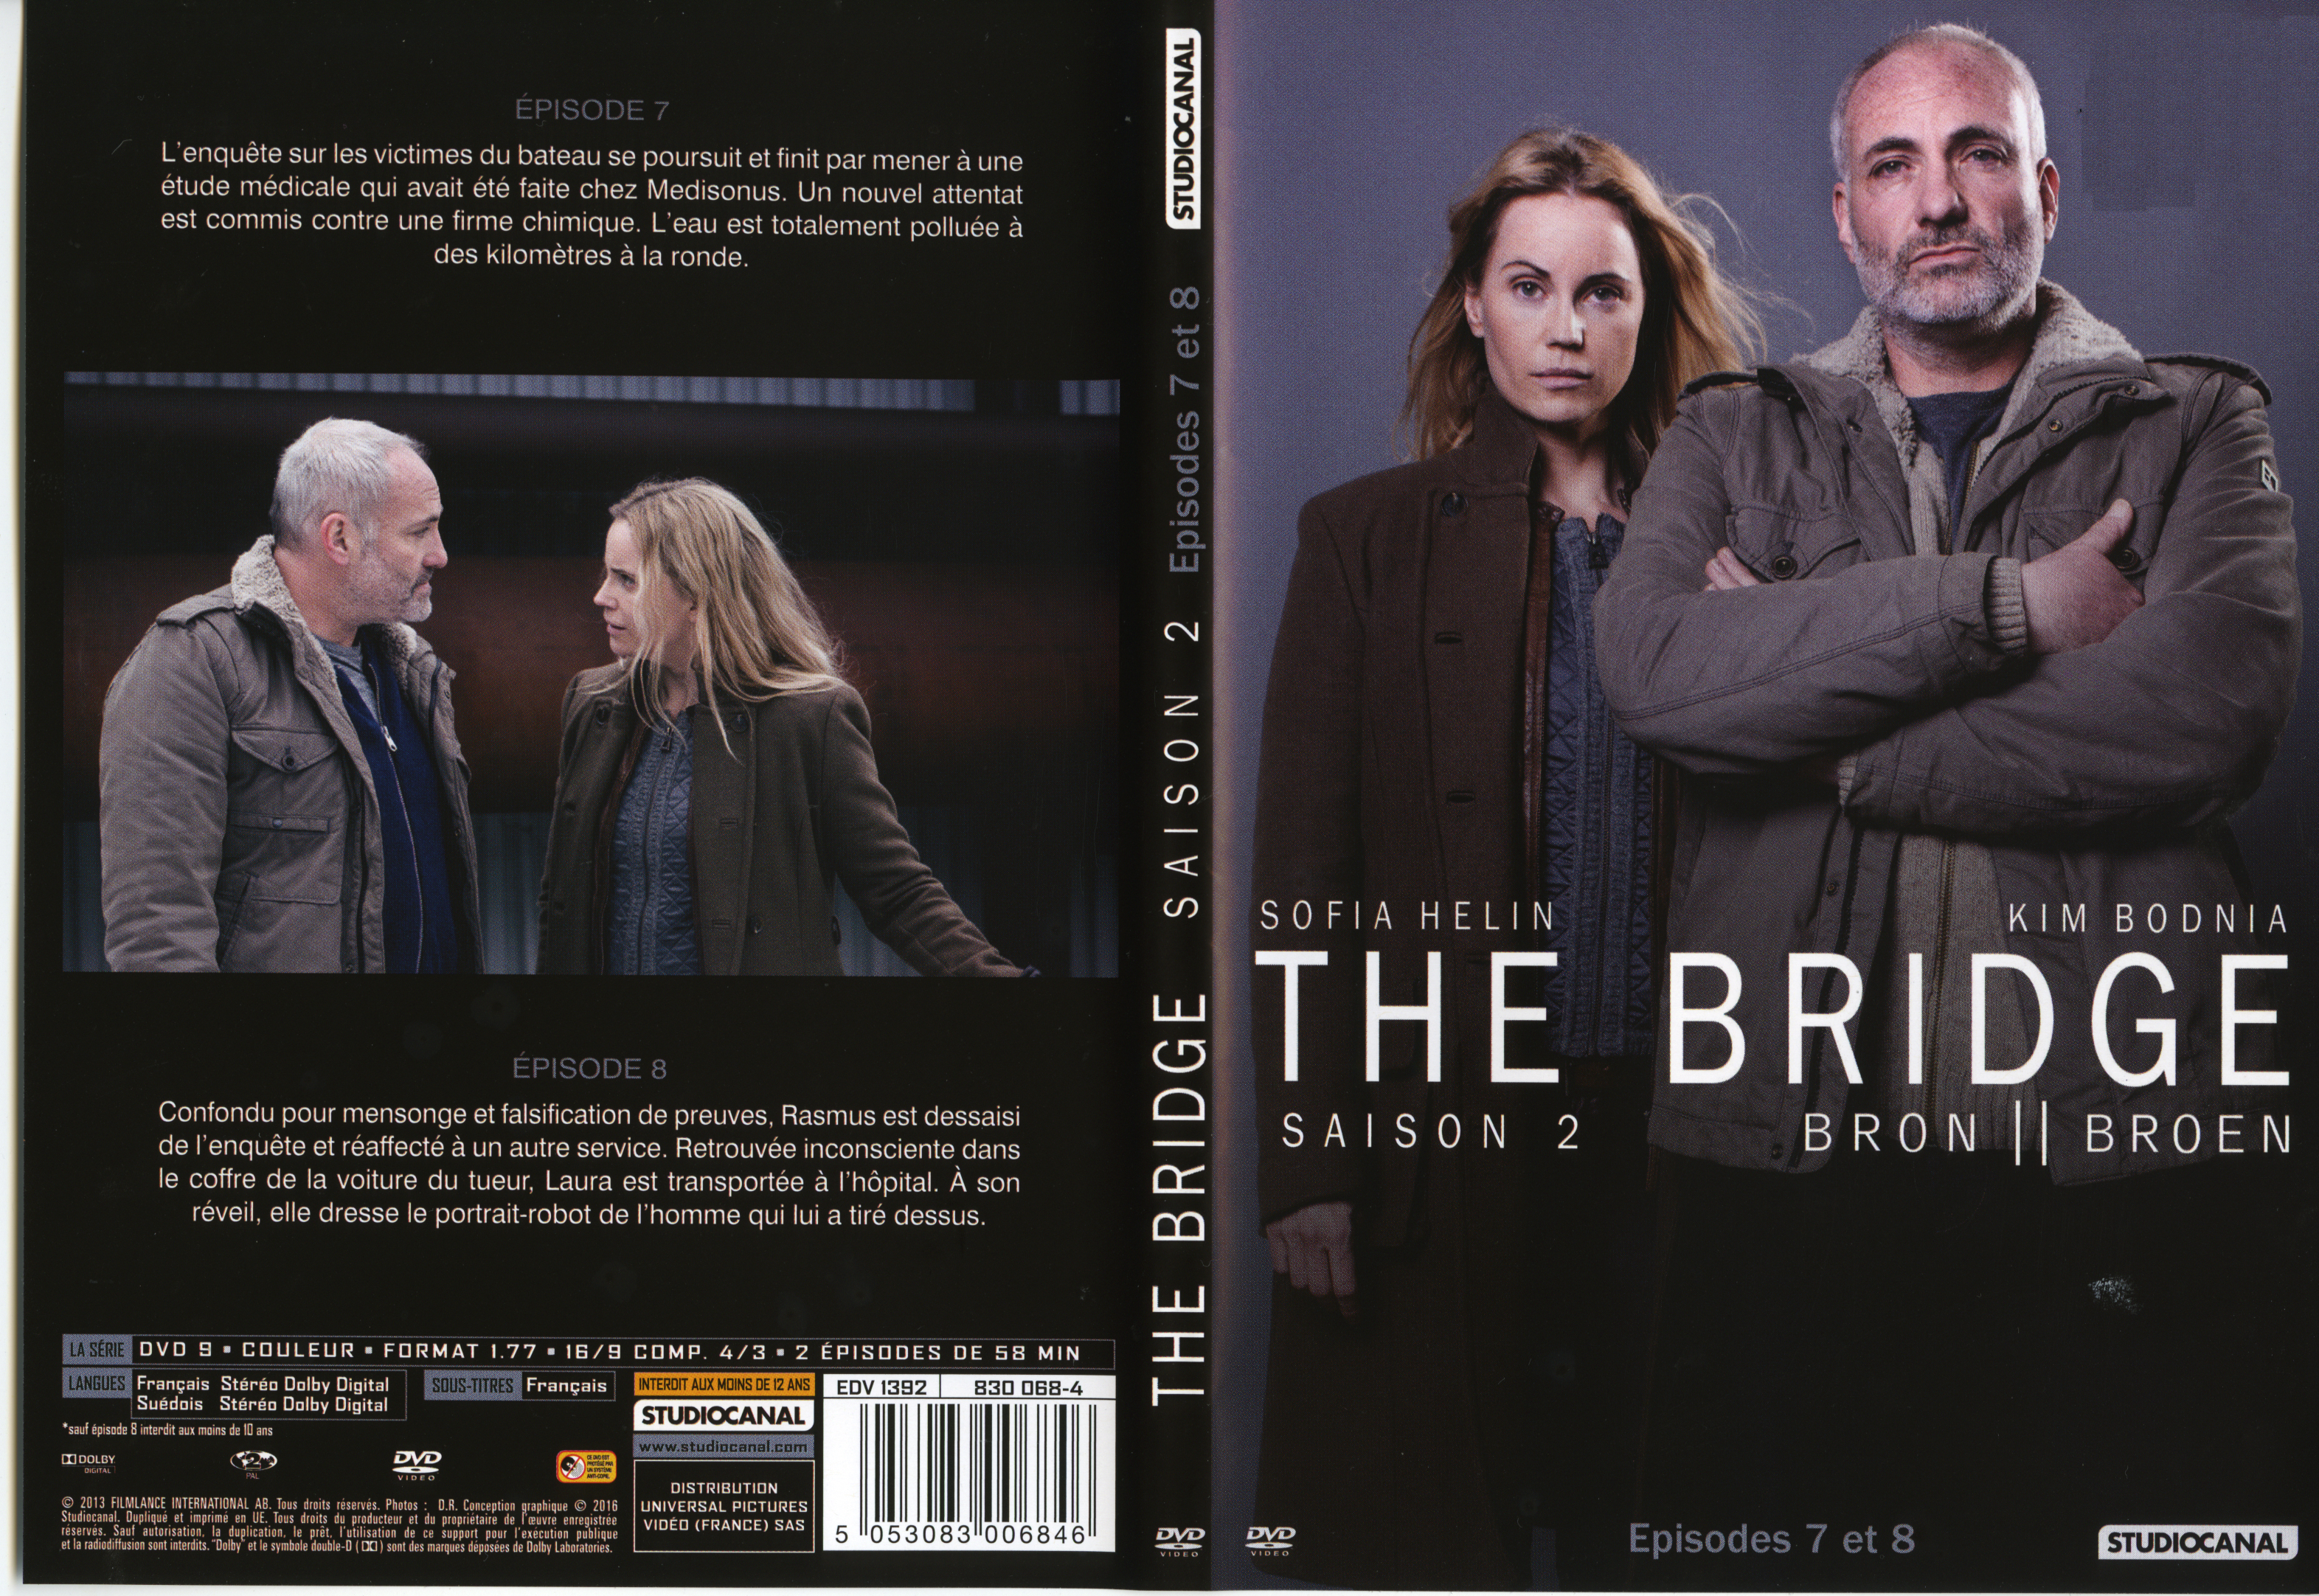 Jaquette DVD The Bridge Saison 2 DVD 3